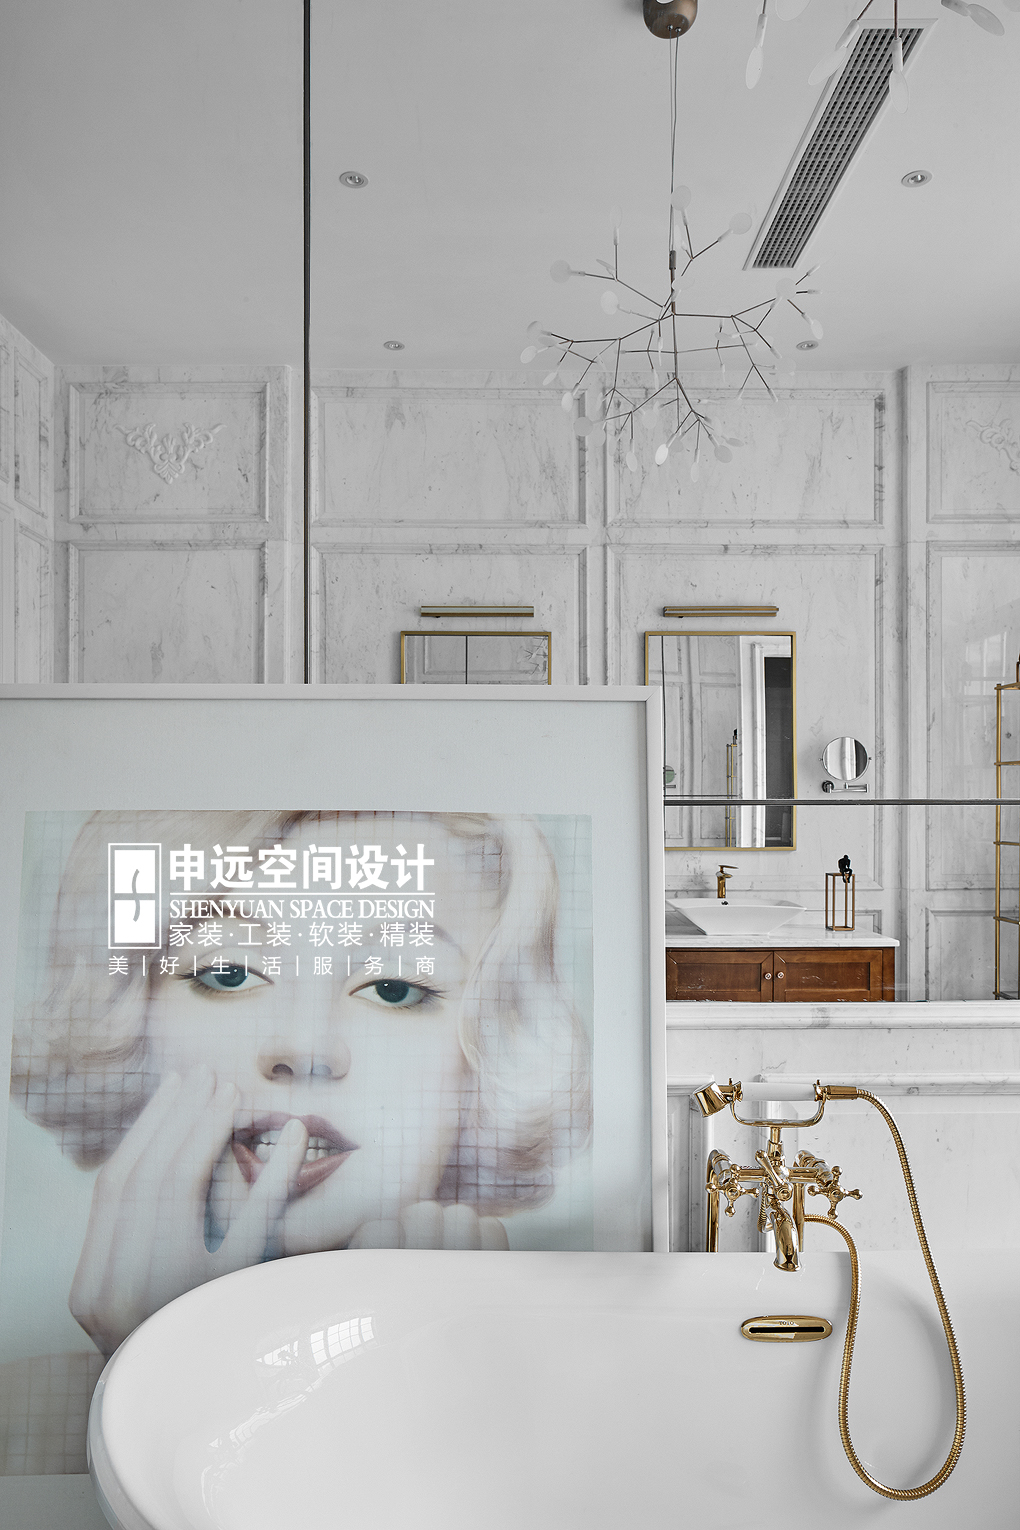 别墅 现代法式 法式 现代 申远 卫生间图片来自申远空间设计北京分公司在北京申远-现代法式风格的分享